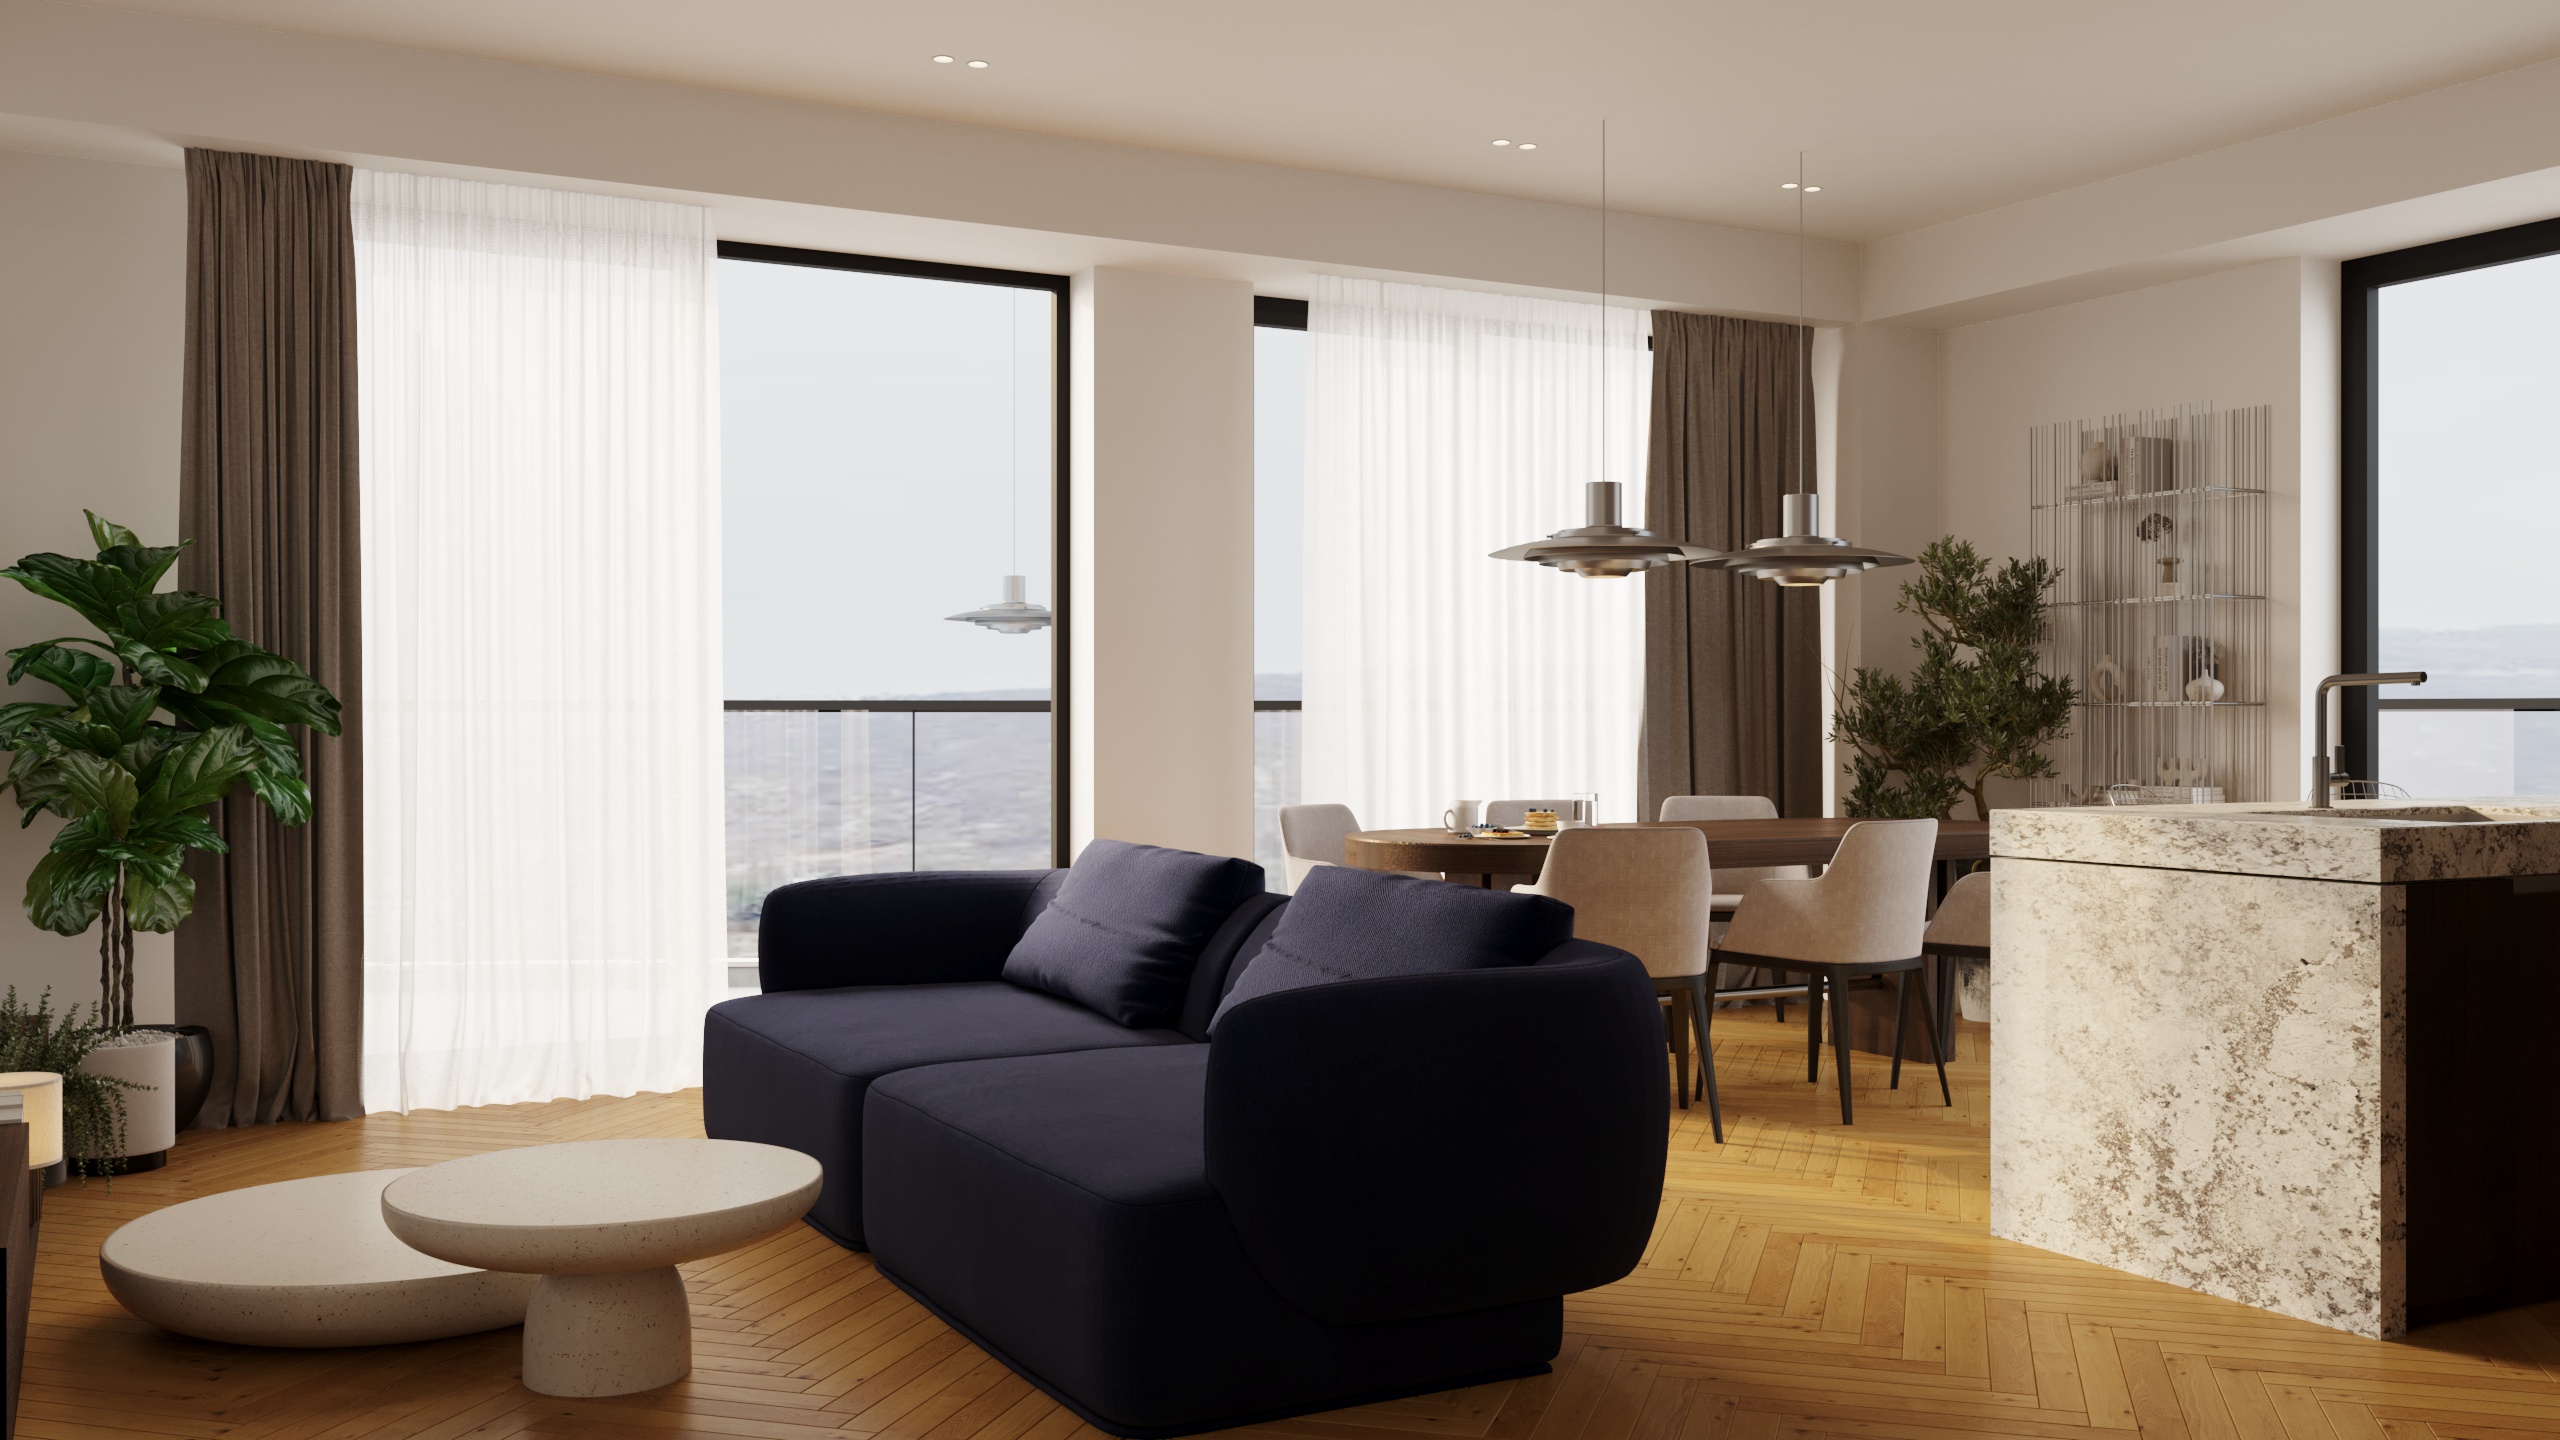 Living room interior design with blue sofa